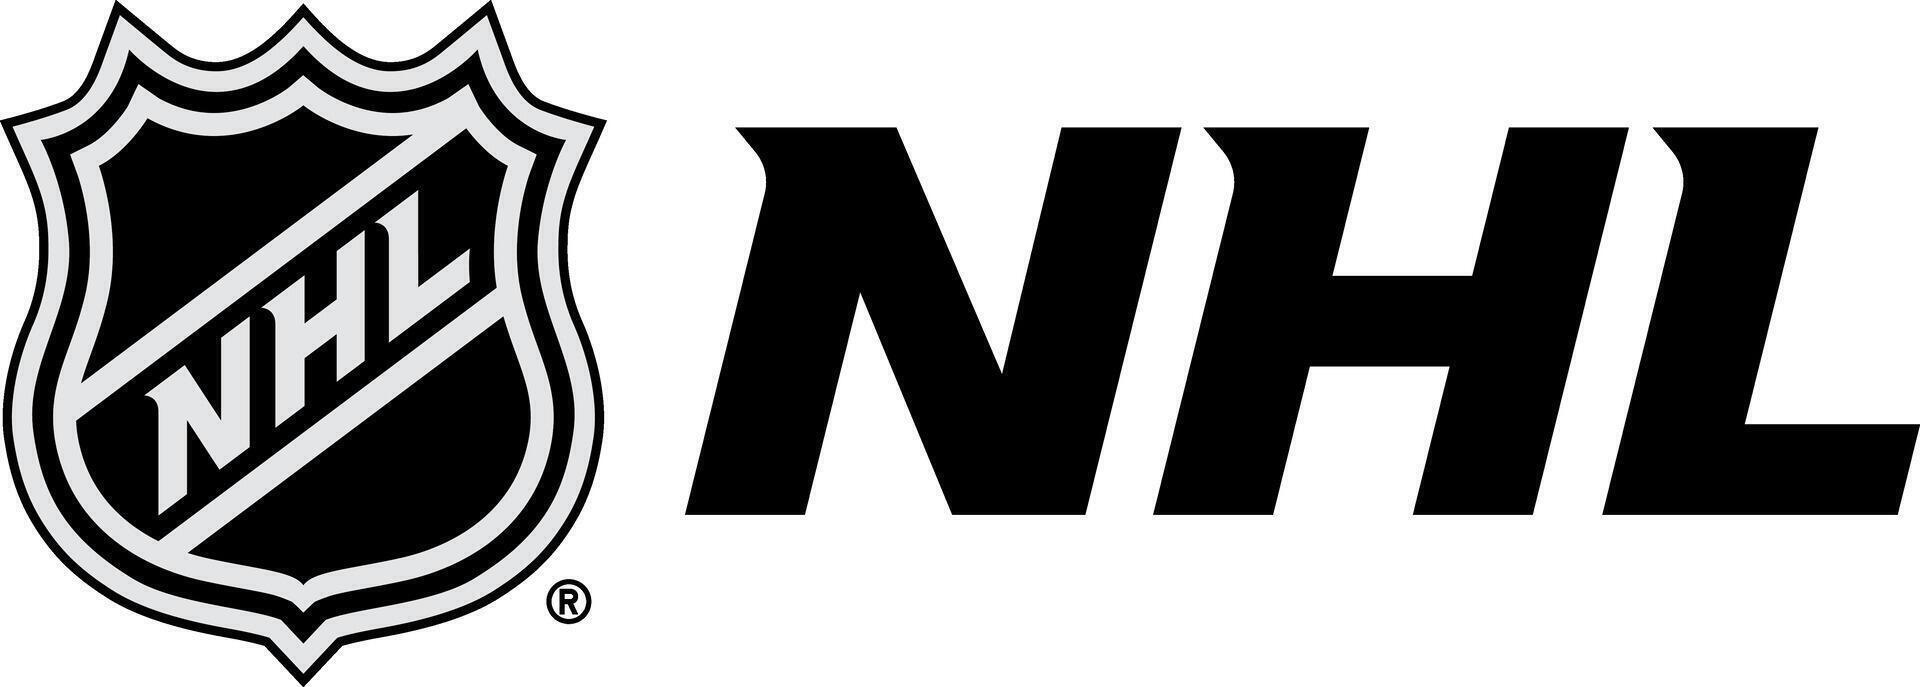 The National Hockey League logo with the inscription vector